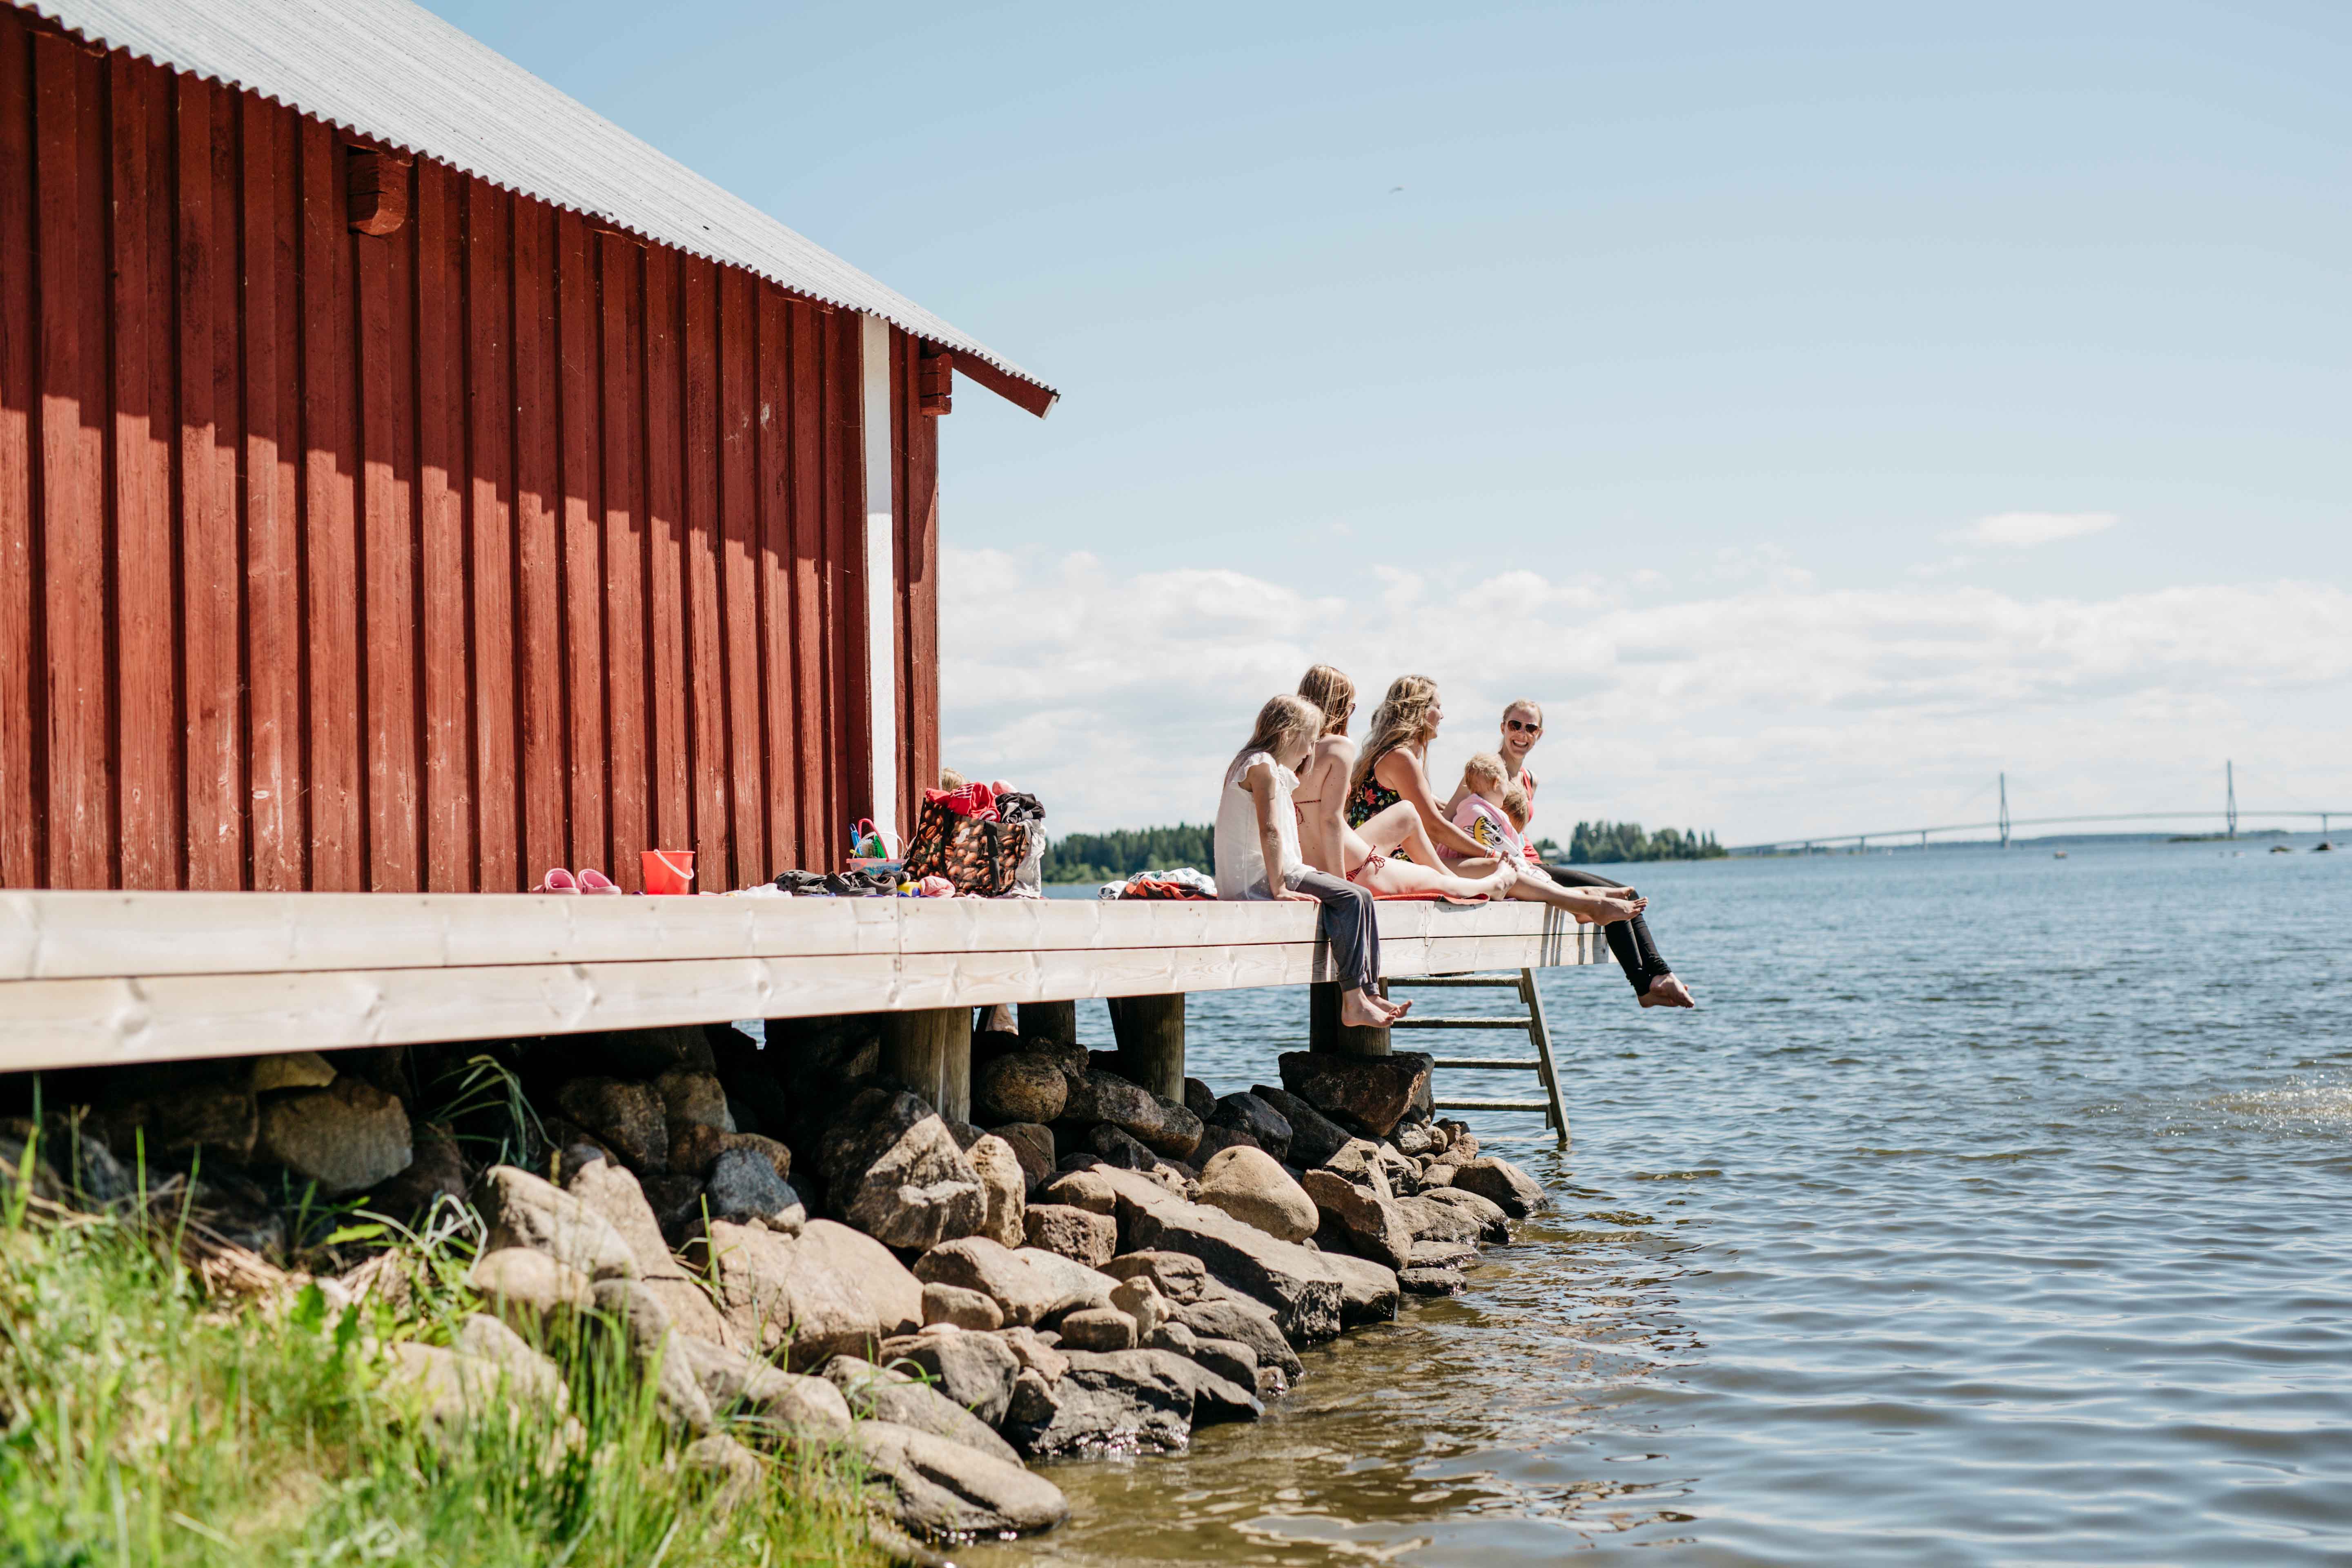 Familia disfrutando de su tiempo libre en un muelle en el archipiélago de Finlandia